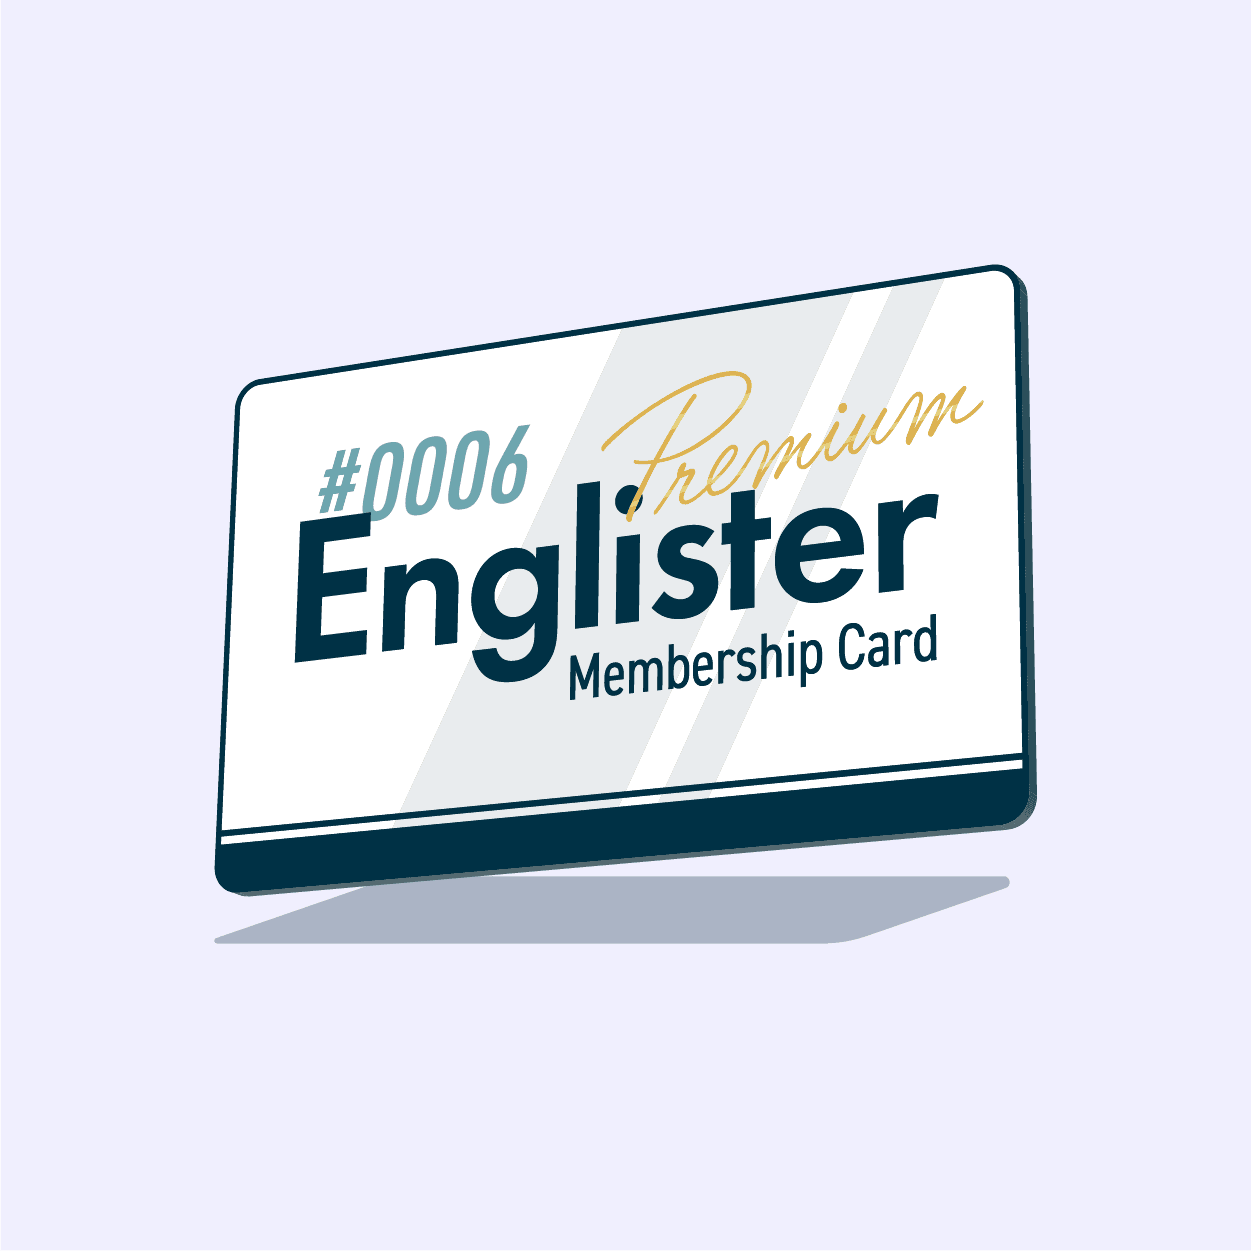 Englister Premium Membership #0006